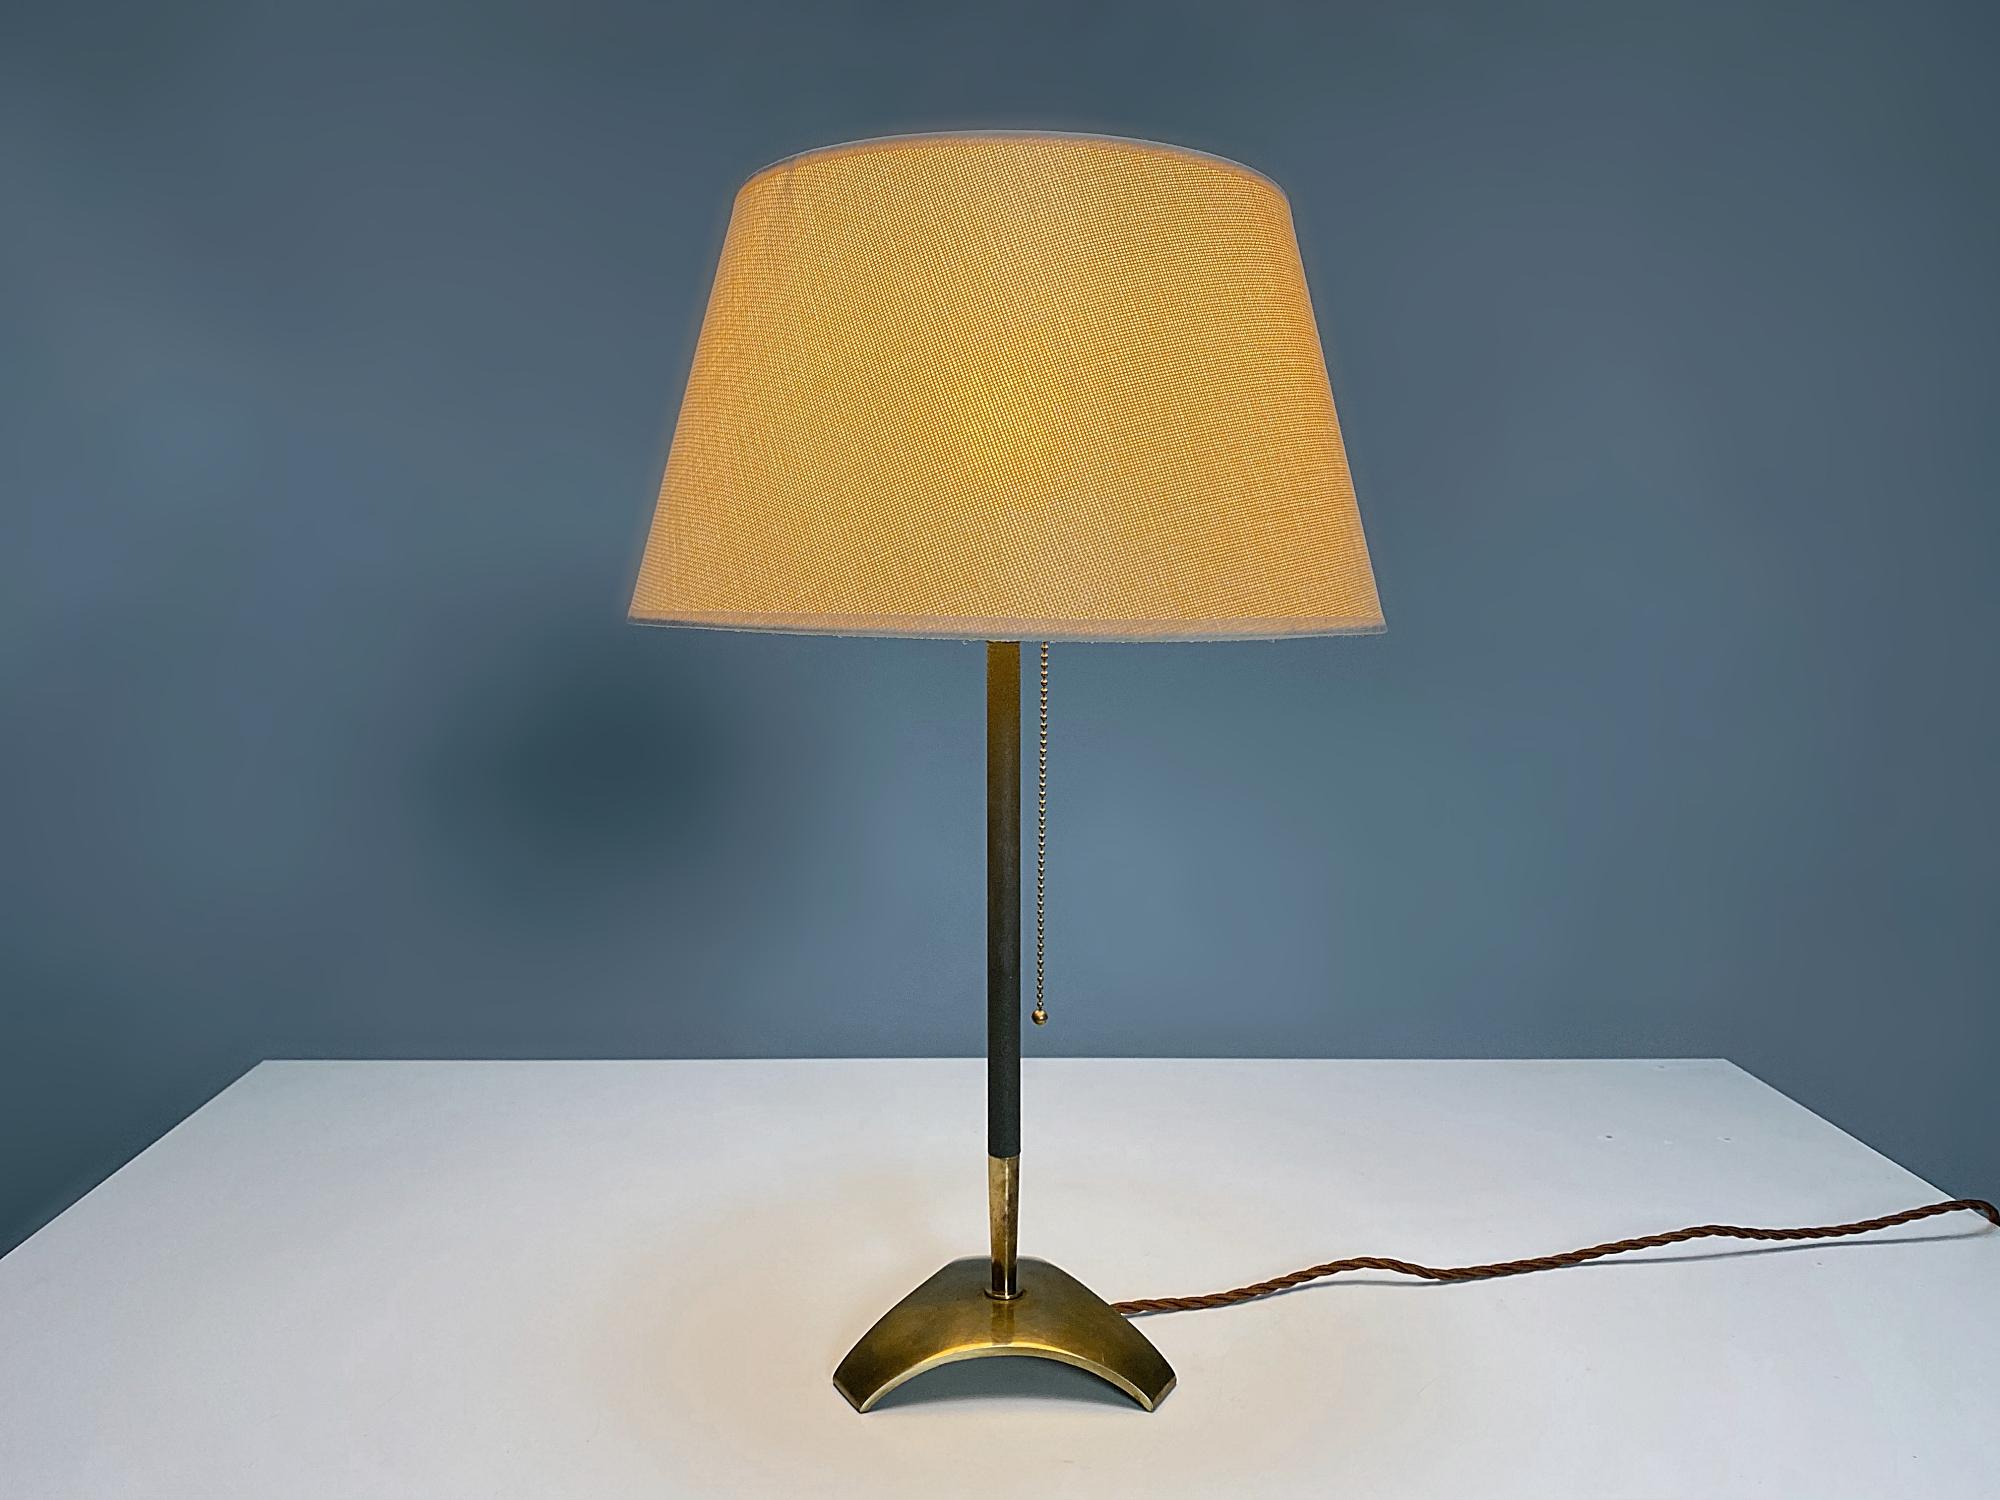 Schöne Hagenauer Werkstätten Messing Tischlampe hergestellt in 1960er Jahren, Österreich. Die Leuchte ist aus poliertem Messing mit dunkelgrau lackiertem Stab gefertigt. Die Lampe spendet ein sanftes und wunderbares Licht. Die Lampe ist in sehr